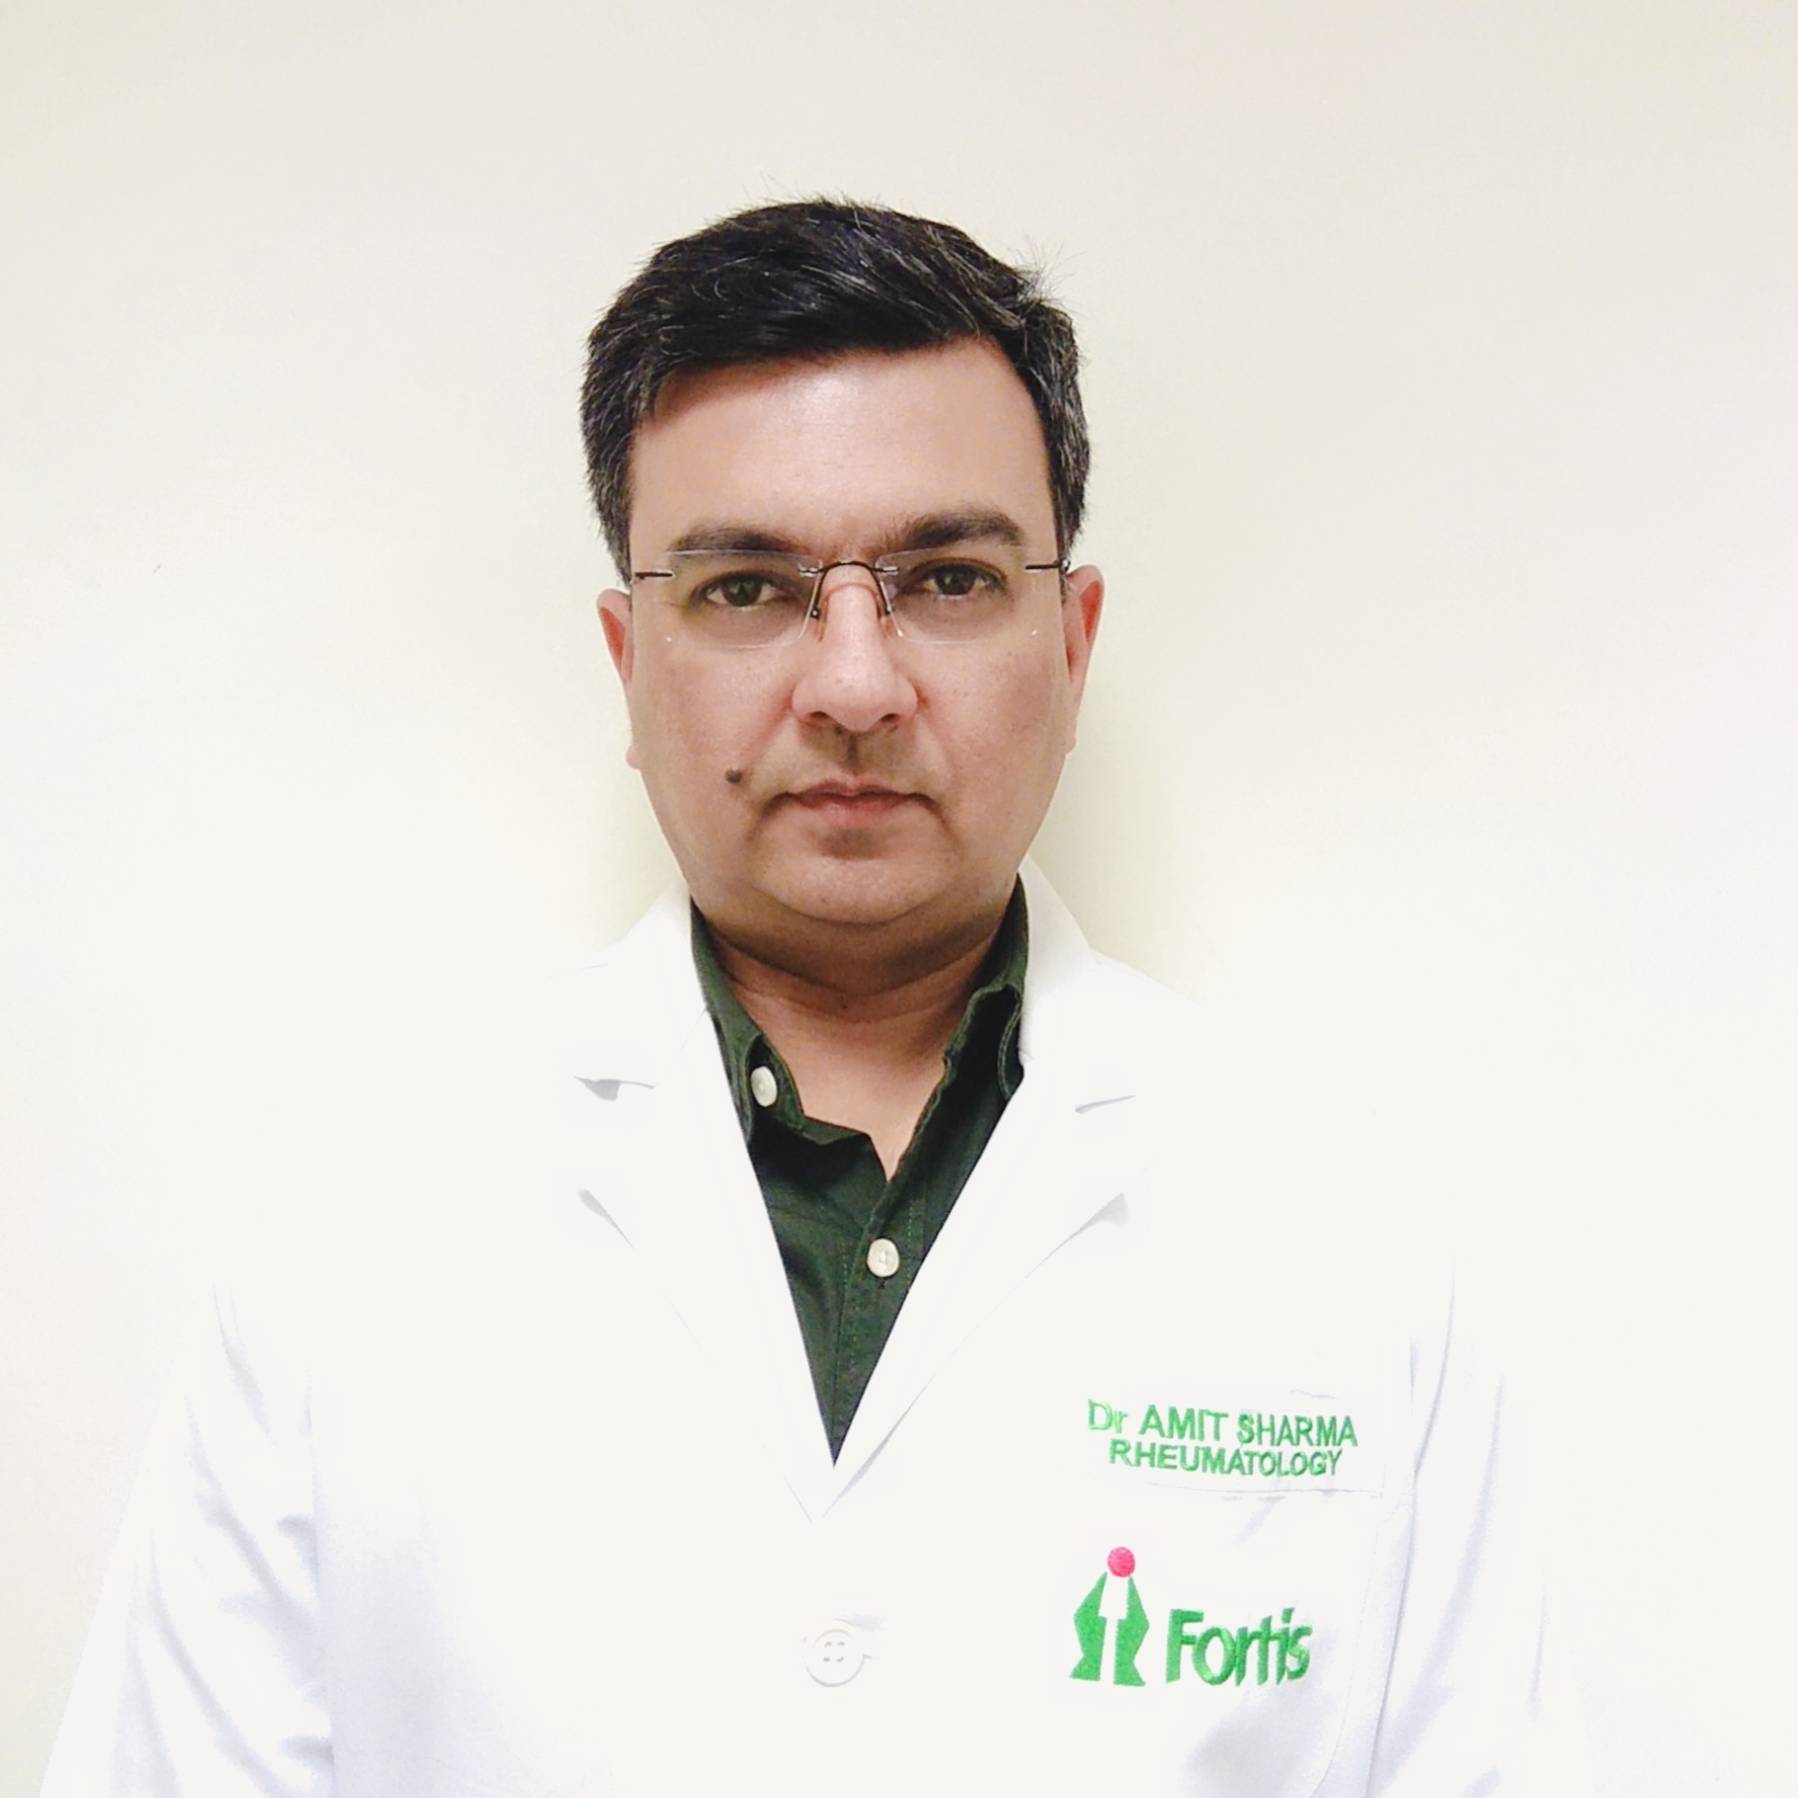 Dr. Amit Sharma Rheumatology Fortis Escorts Hospital, Jaipur